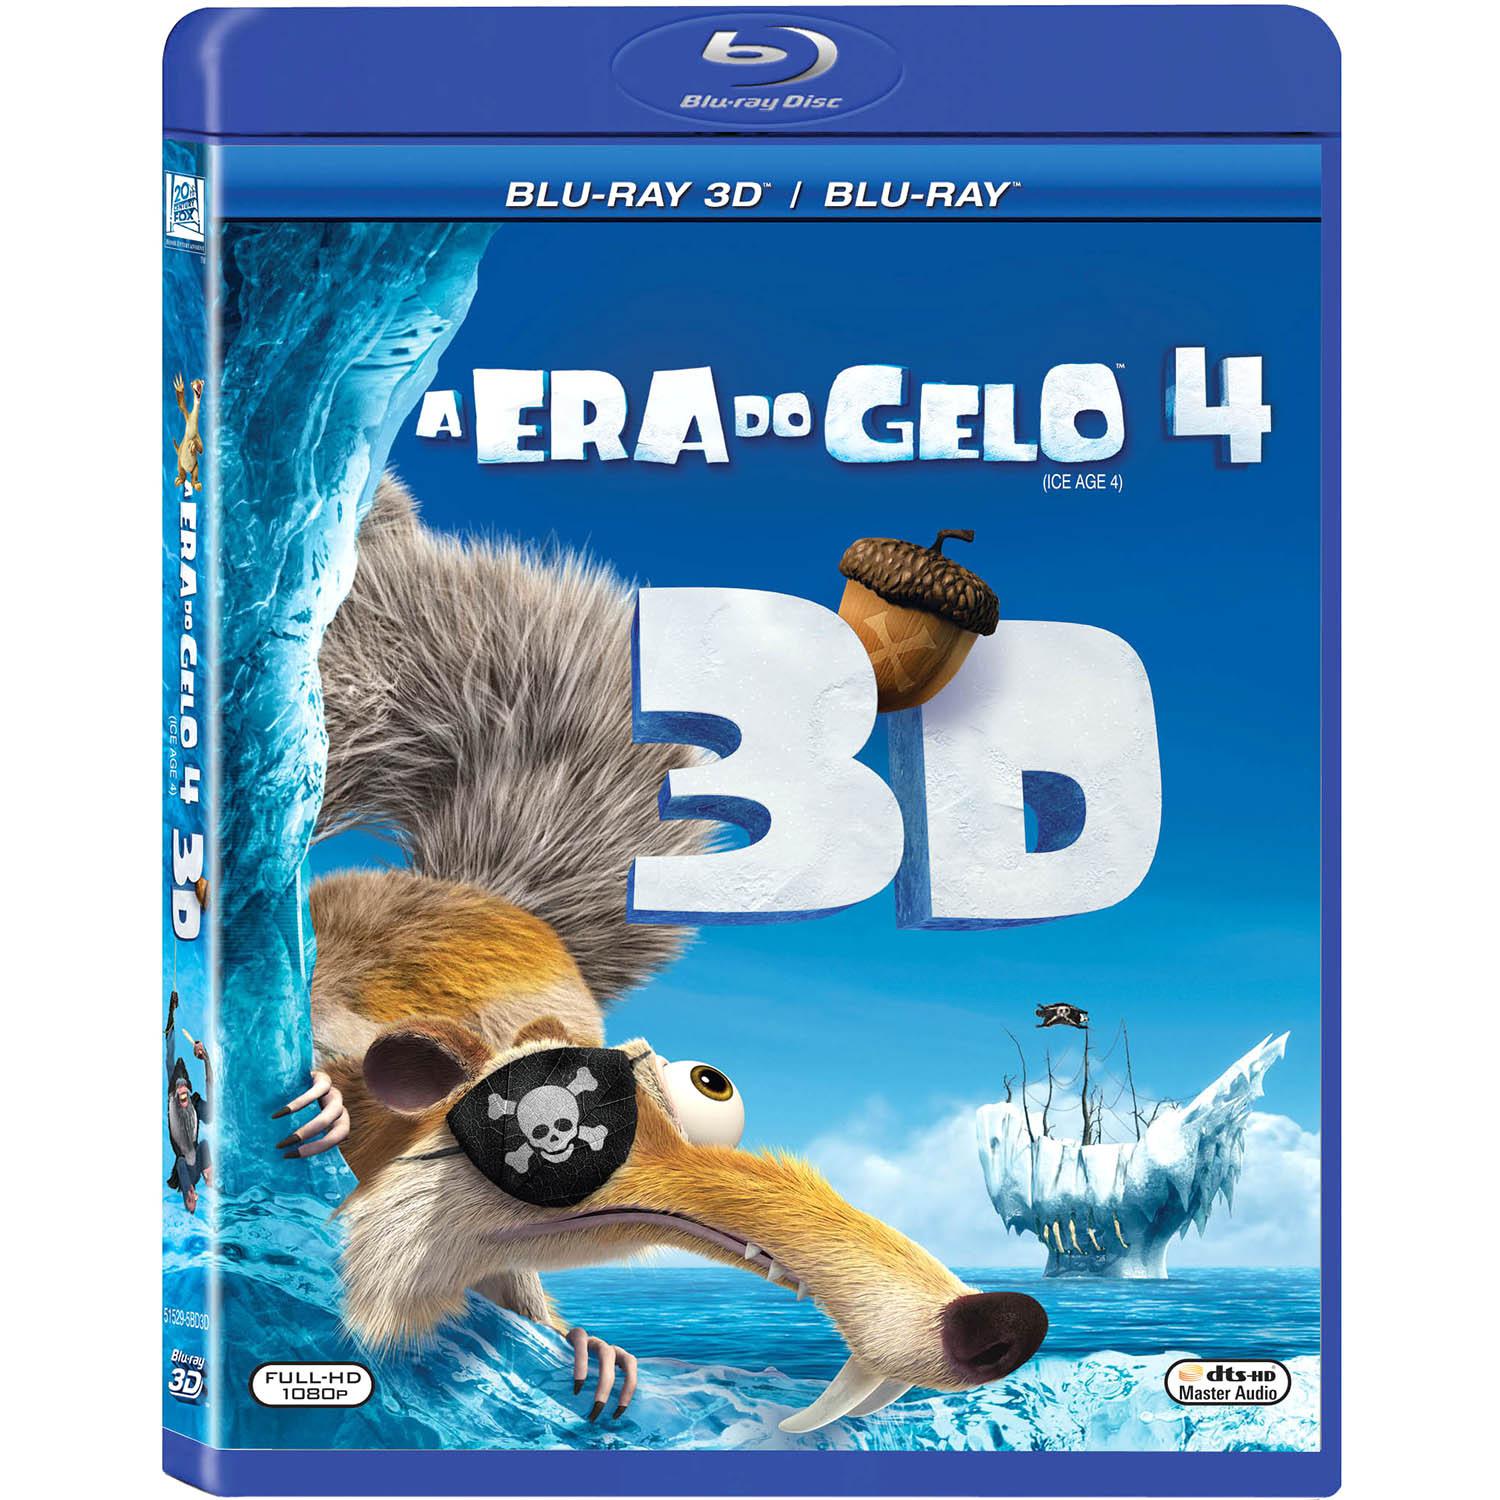 Blu-ray - A Era do Gelo 4 (Blu-ray 3D) é bom? Vale a pena?